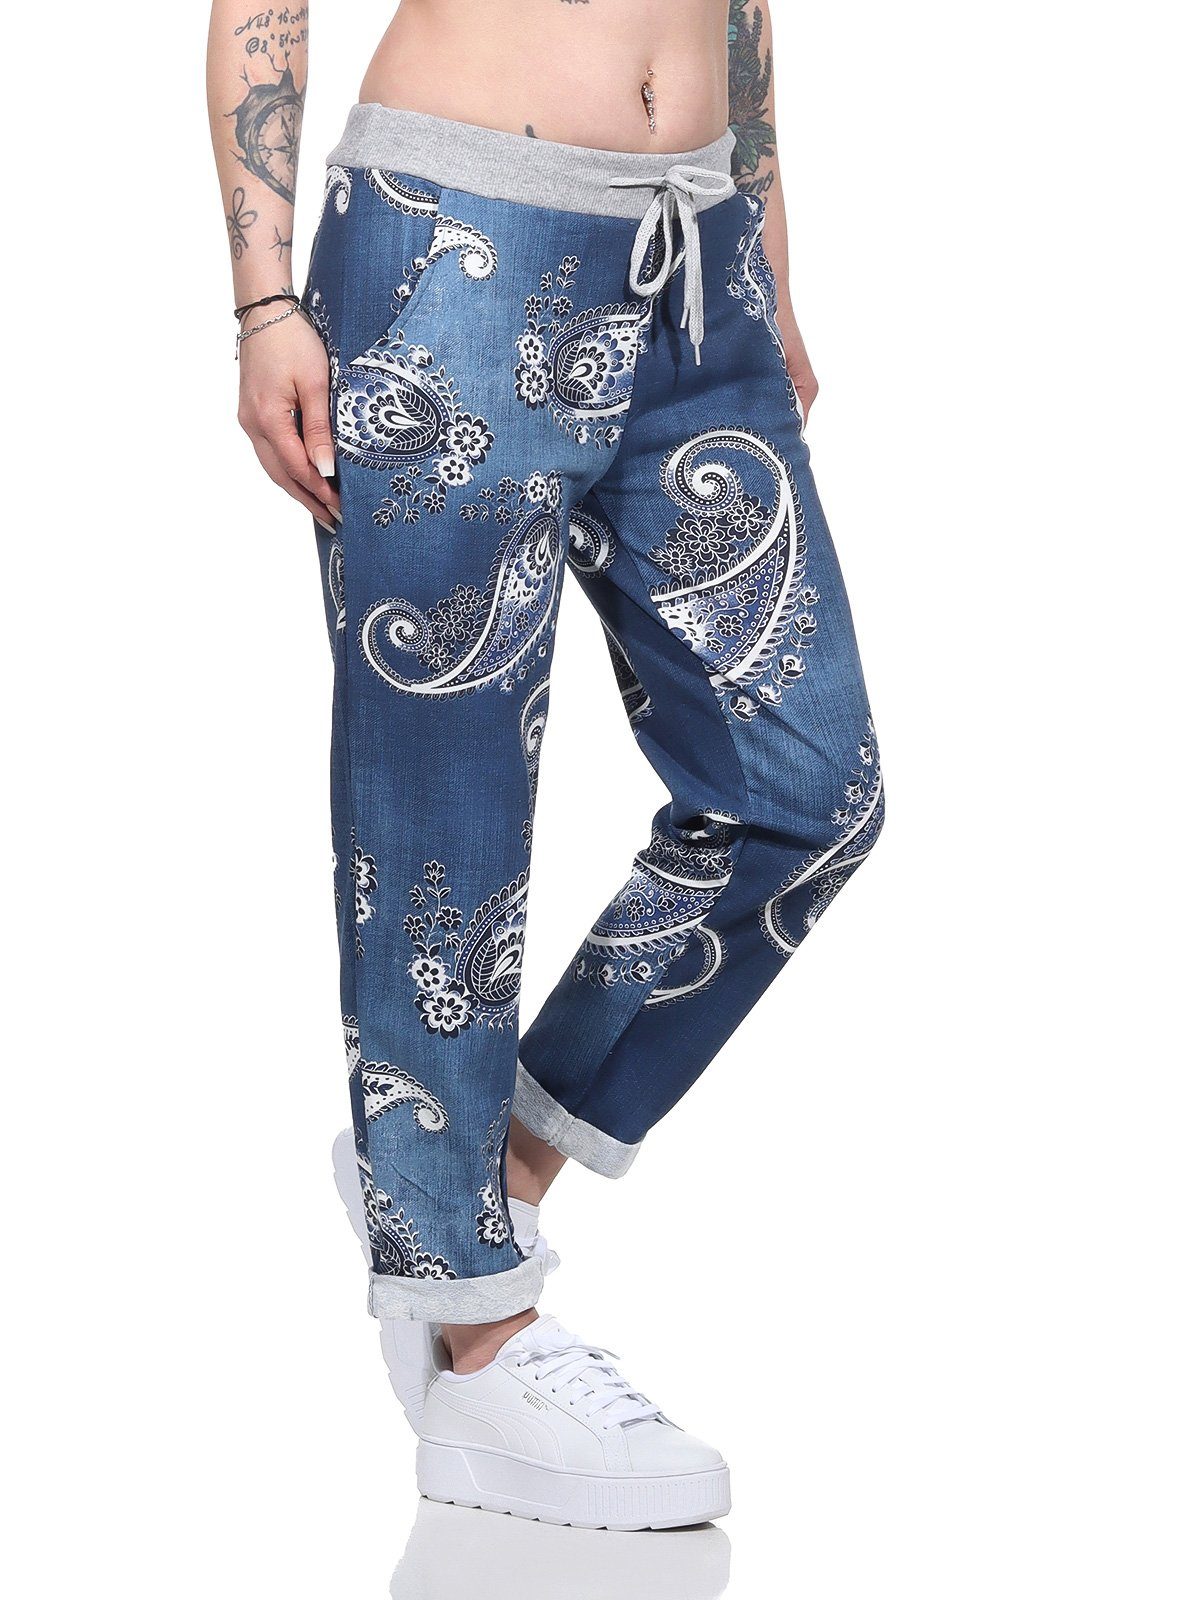 Damenmode Damen moderner und leichte dunkelblau Aurela Jogger in mit Bund Haushose Schnürung Jeansoptik Freizeithose Pants elastischem Jeansoptik